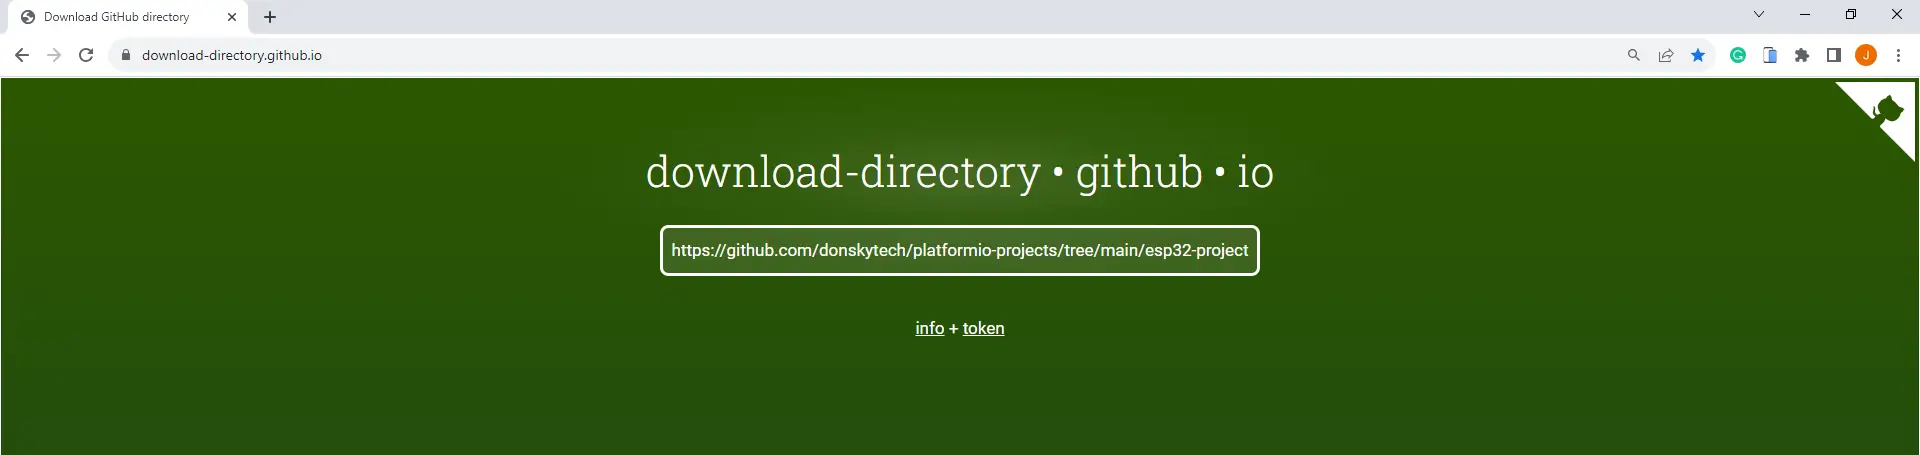 GitHub folder downloader